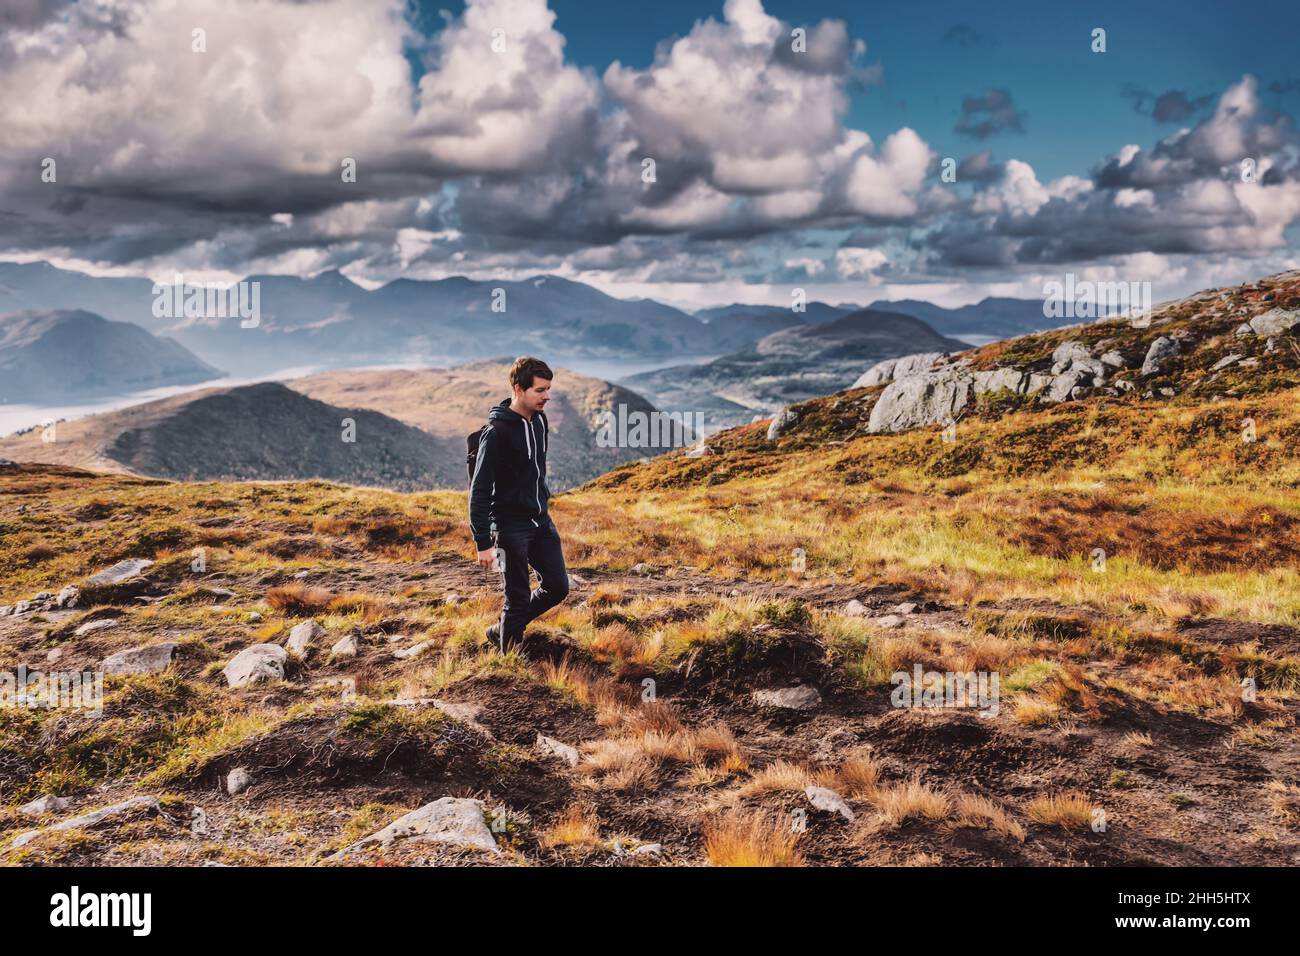 Jeune homme adulte en randonnée au sommet d'une montagne en norvège pendant l'automne, portant un sac à dos, regardant vers le bas, le ciel et l'horizon avec la chaîne de montagnes, volda norw Banque D'Images